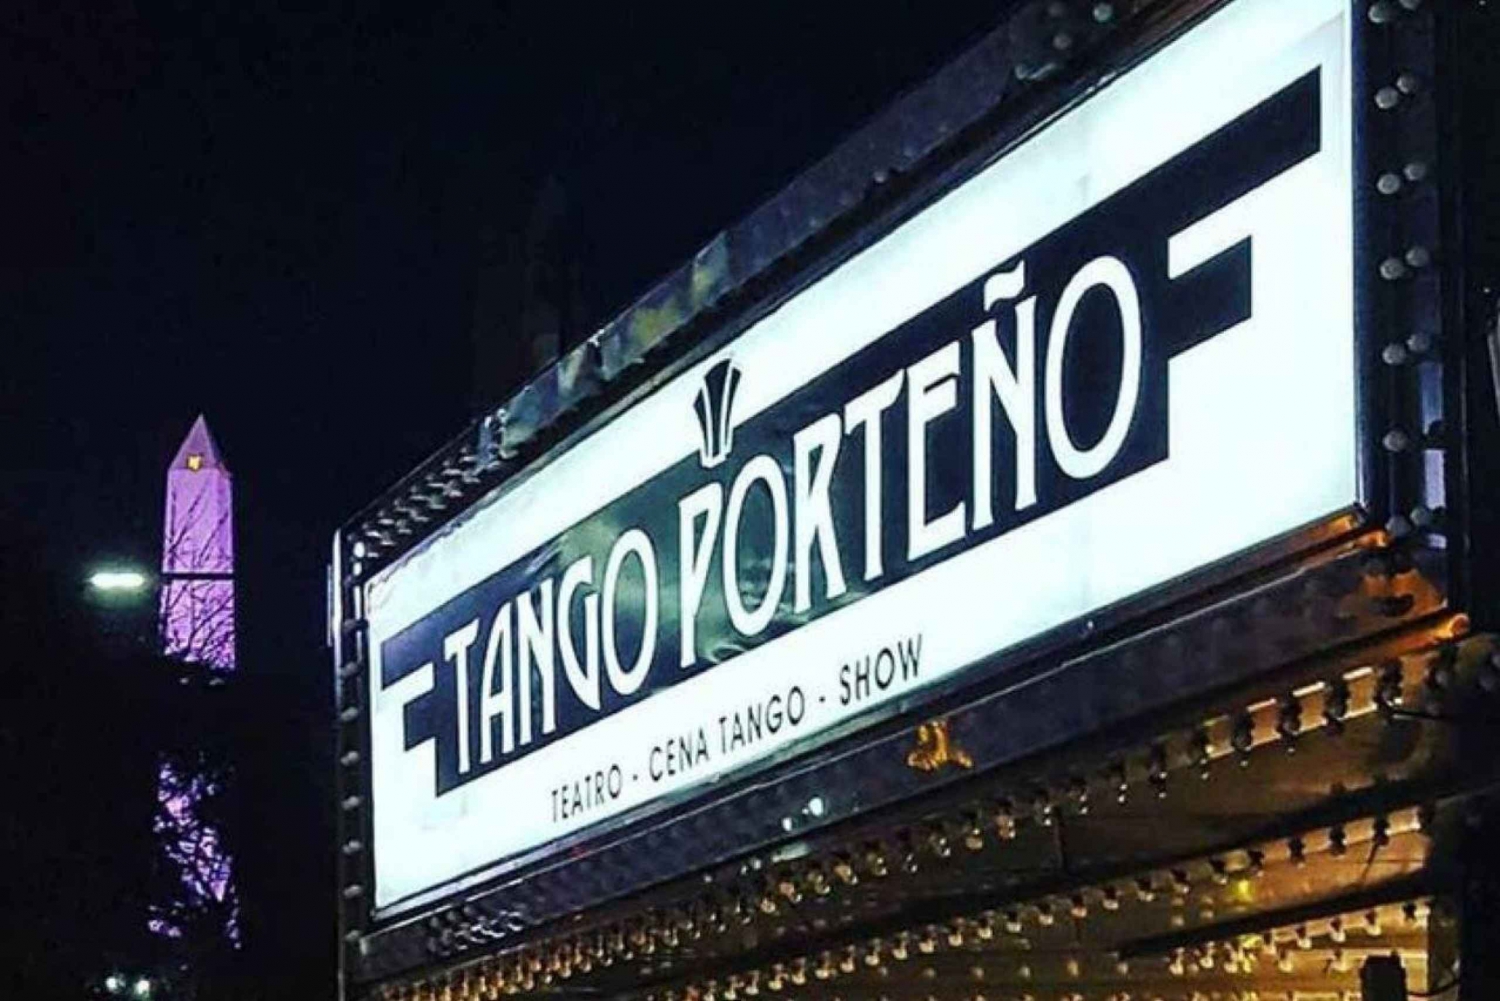 Buenos Aires: Ingresso para o show Tango Porteño com opção de jantar